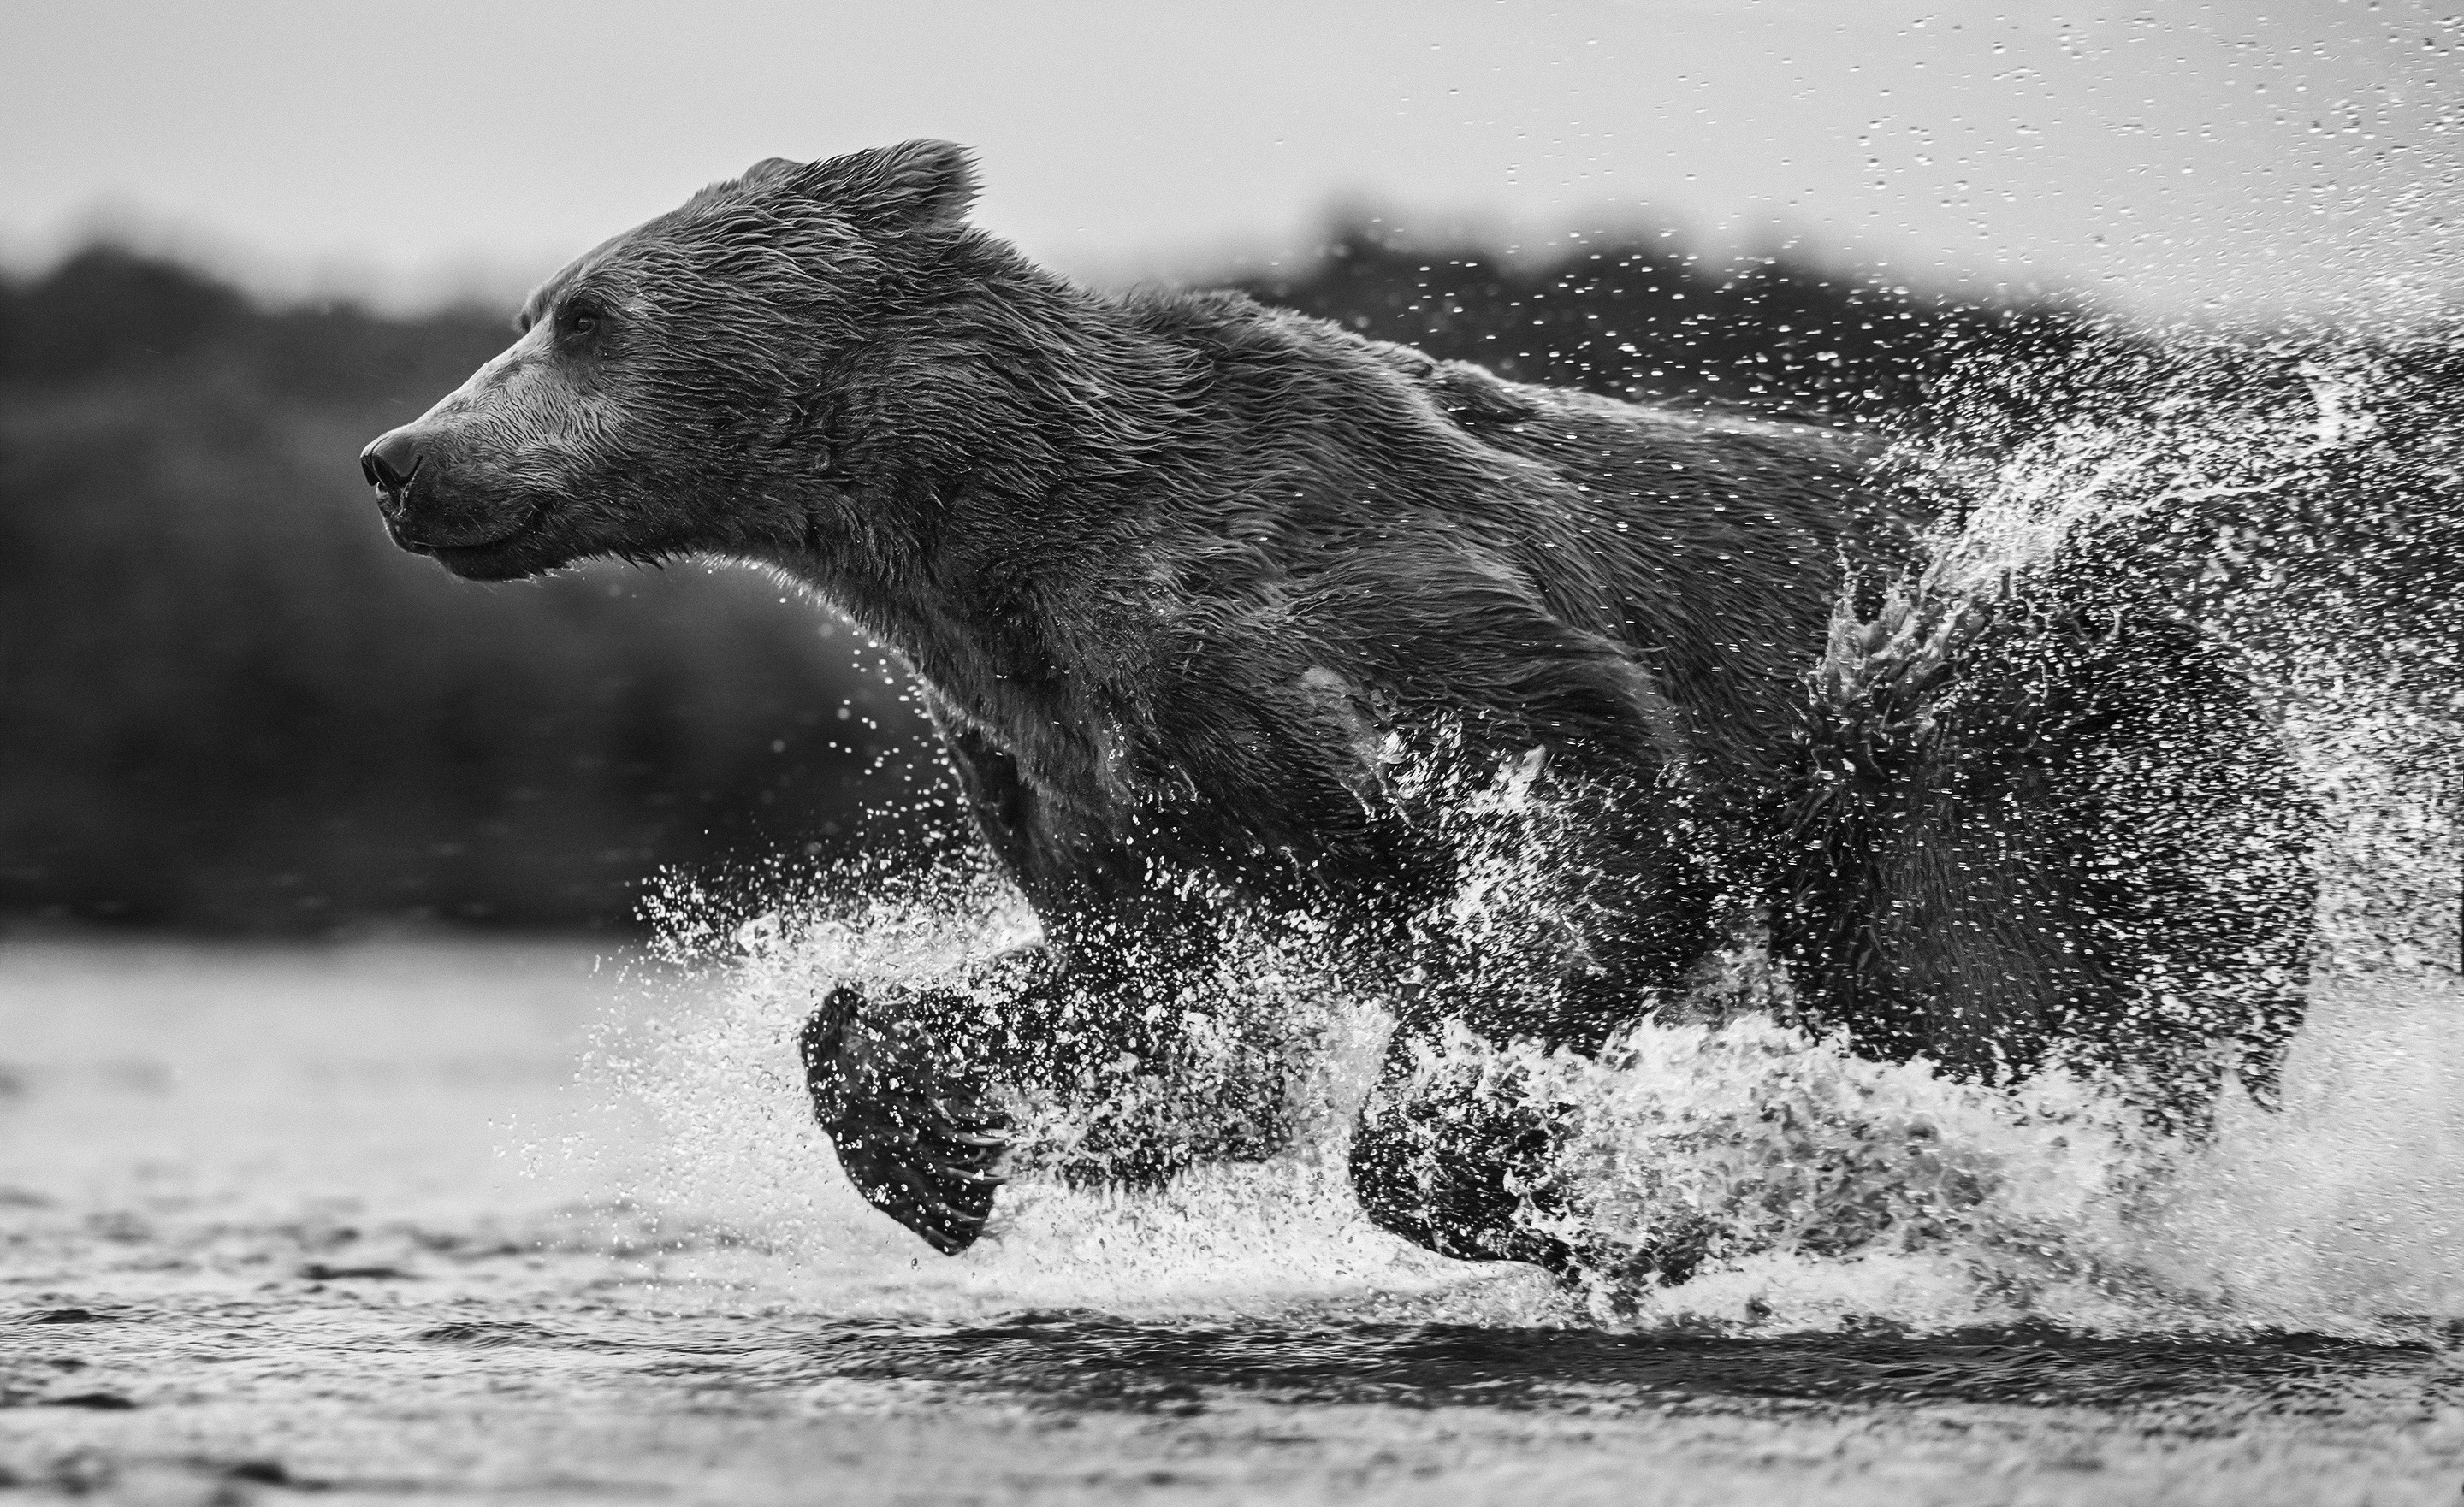 General 2880x1762 bears animals nature running water monochrome mammals splashes